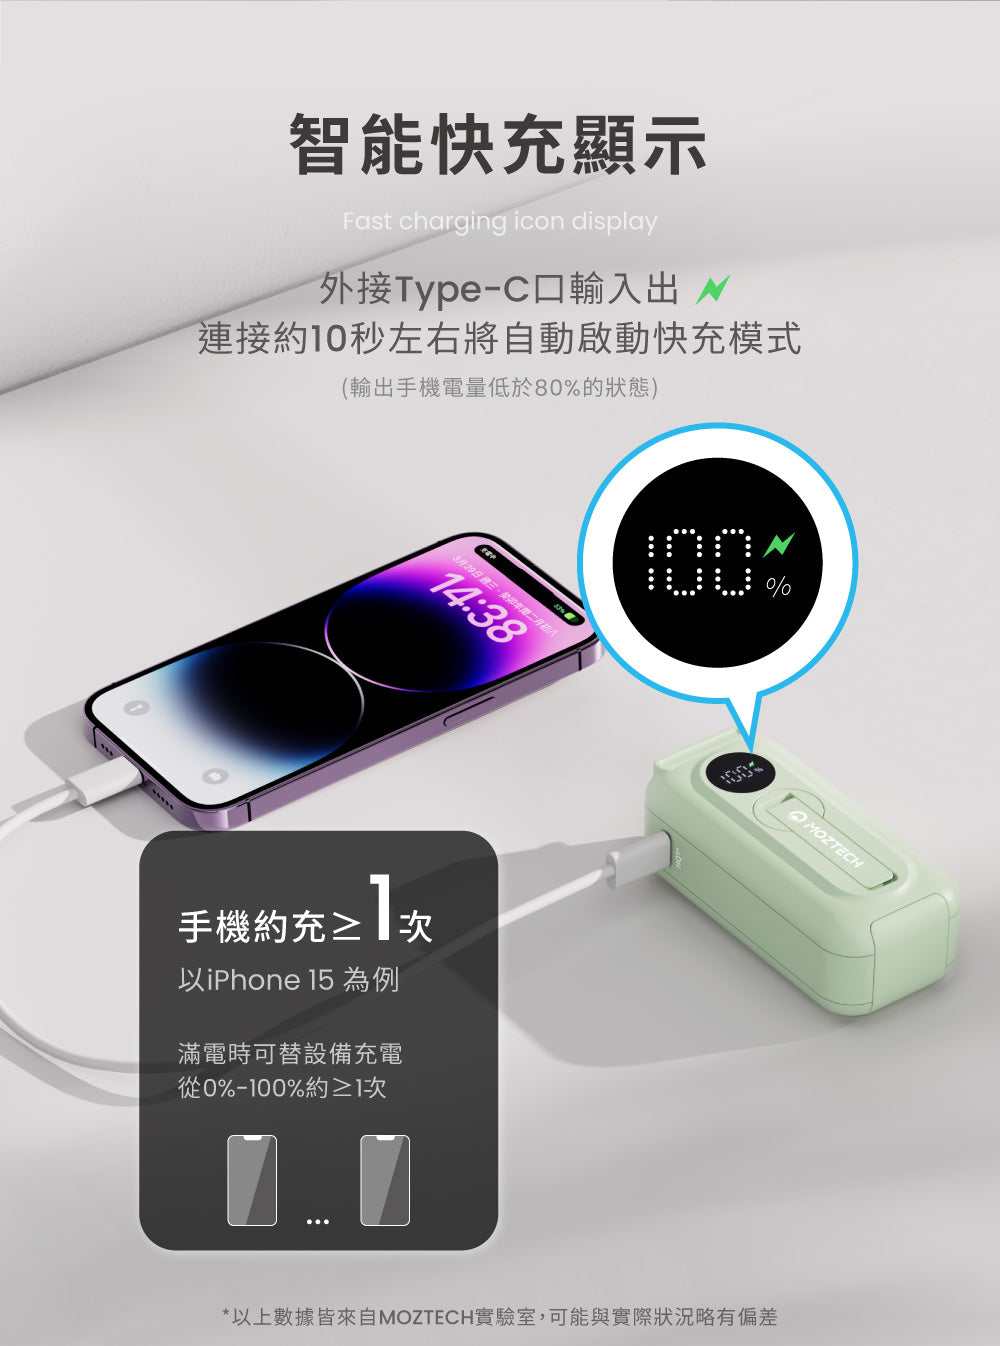 Fast charging icon display~Type-CJX s10kN۰ʱҰʧ֥RҦ(XqqC80%A)329gTGK14:38R HiPhone 15 Һqɥi]ƥRqq0%-%100%MOZTECH*HWƾڬҨӦMOZTECH,iPڪpt